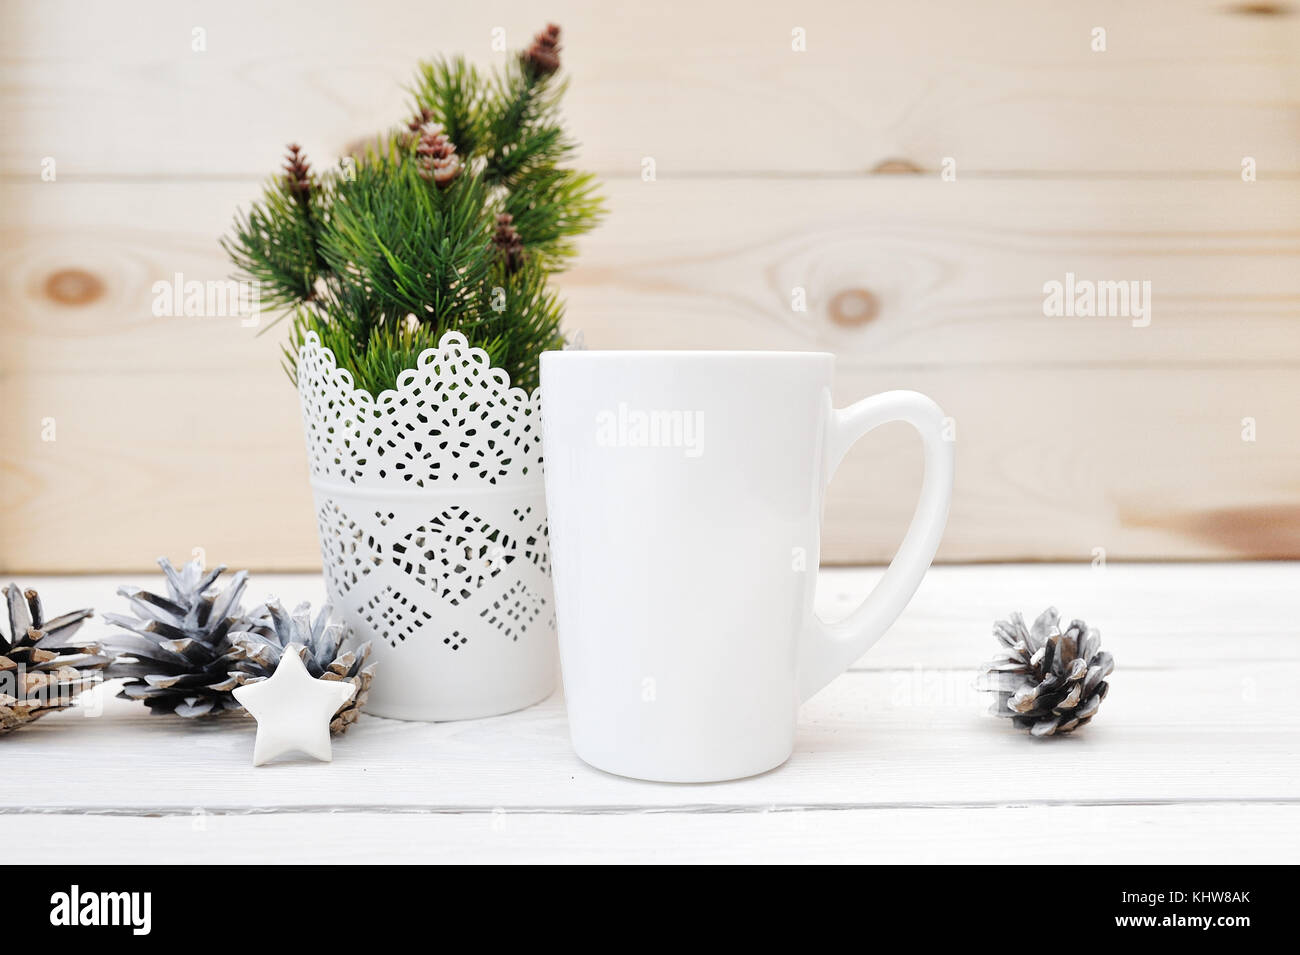 Natale mock up stock stile immagine di prodotto tazza bianca, natale scena con un vuoto bianco tazza da caffè che è possibile sovrapporre il vostro design personalizzato Foto Stock